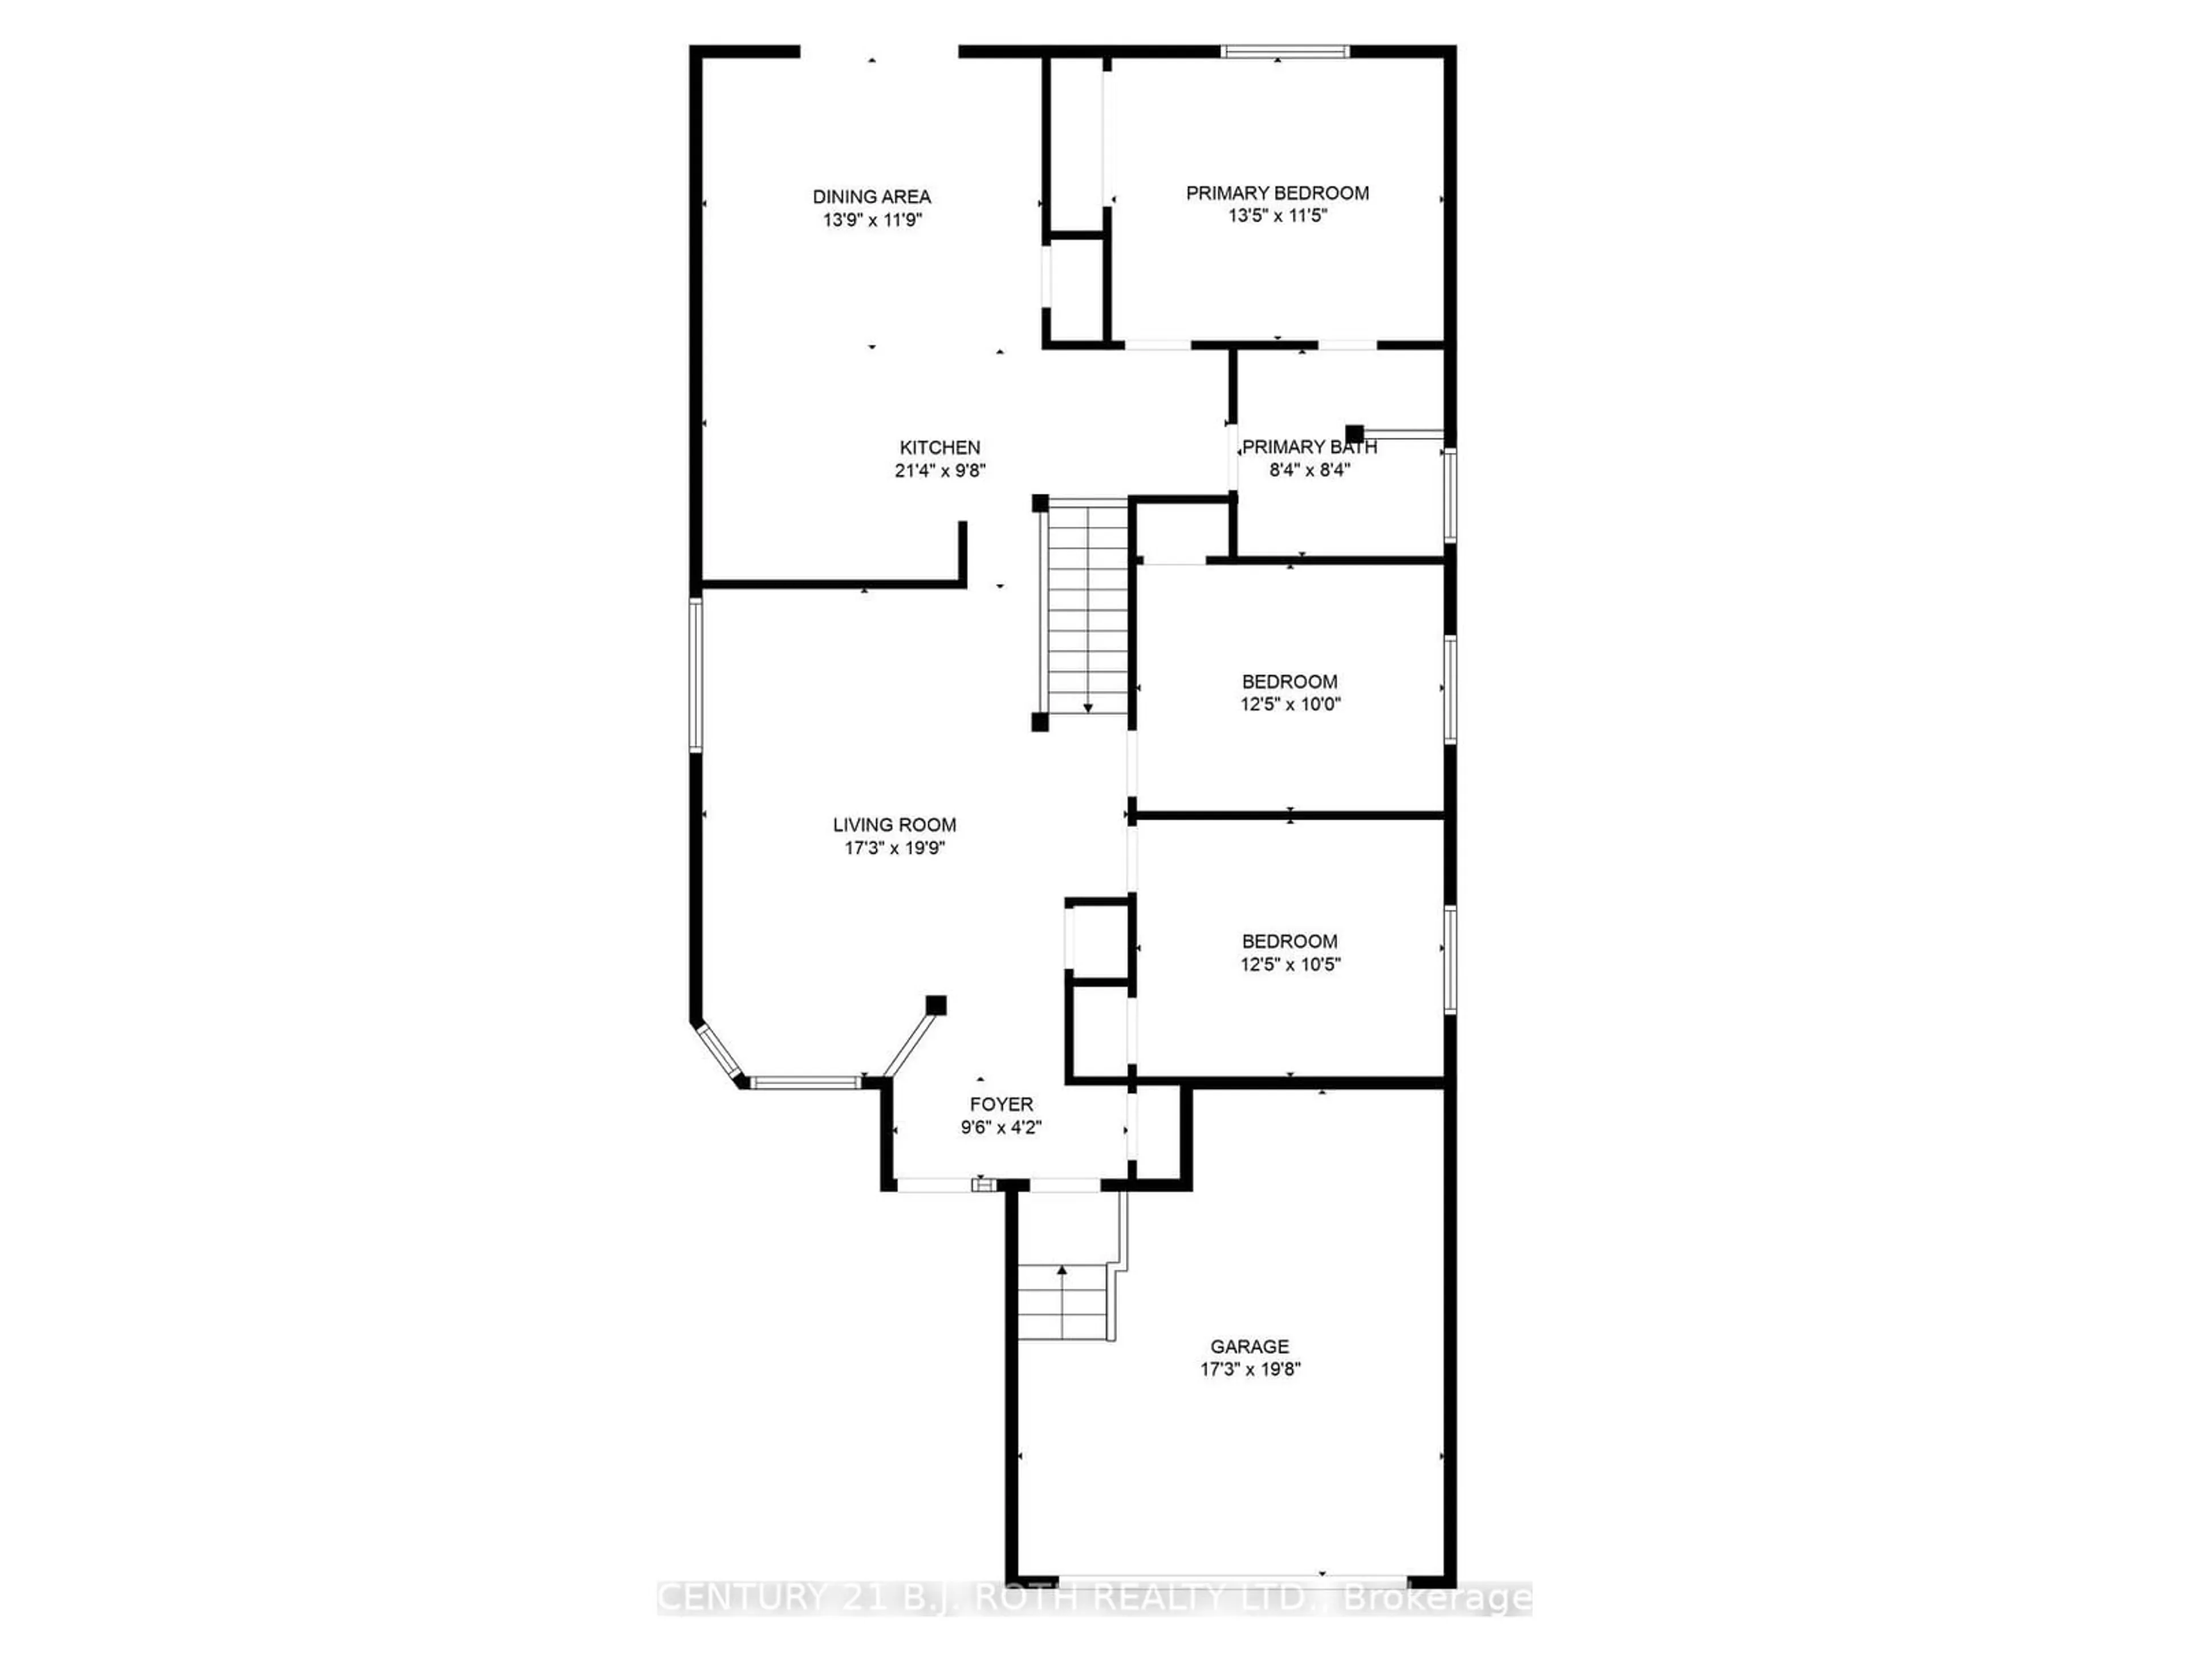 Floor plan for 165 Cheltenham Rd, Barrie Ontario L4M 6S5